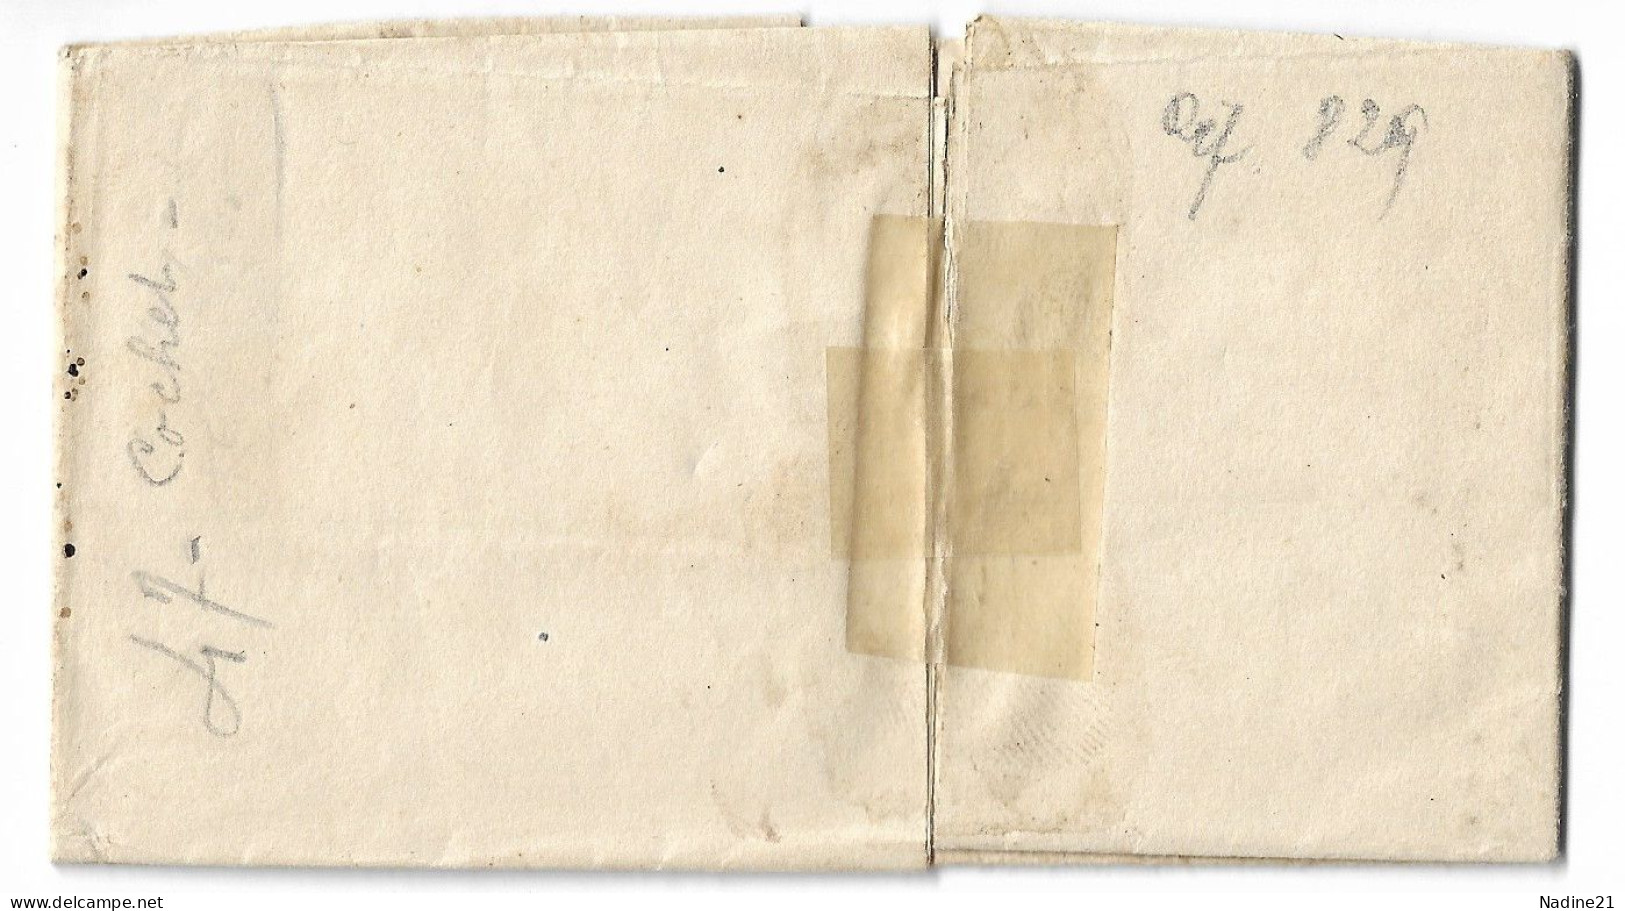 1847. Lettre. Avec Corresp. 1847 Tampon Turin (TORINO 25 GENN.) à Dest. FRANCE - Taxe 8 De Port Payé - Zonder Classificatie